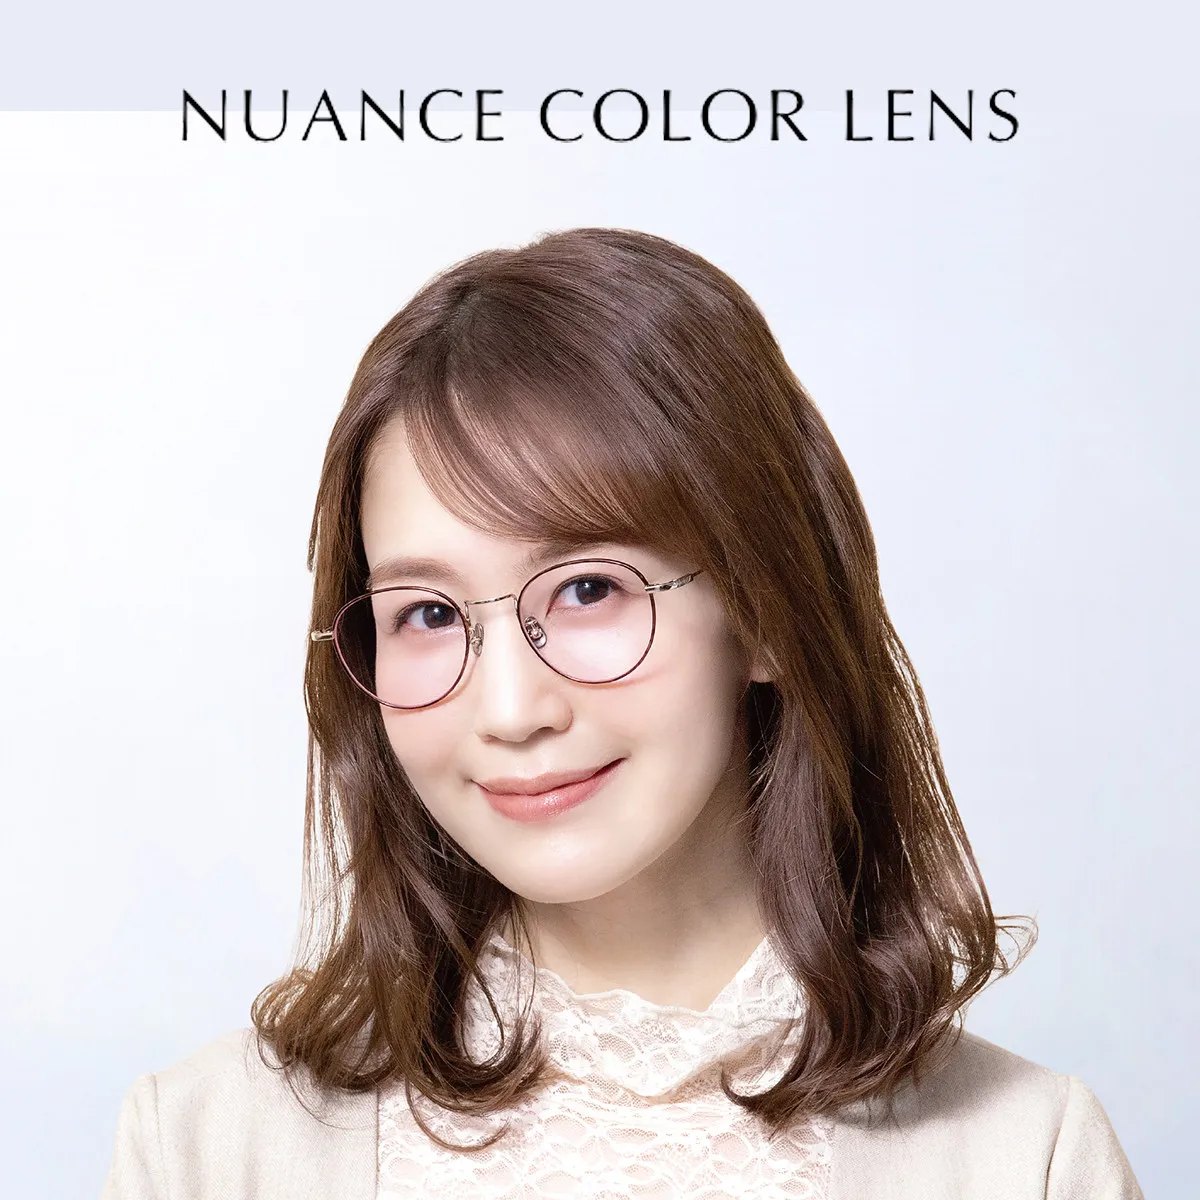 Nuance Color Lens